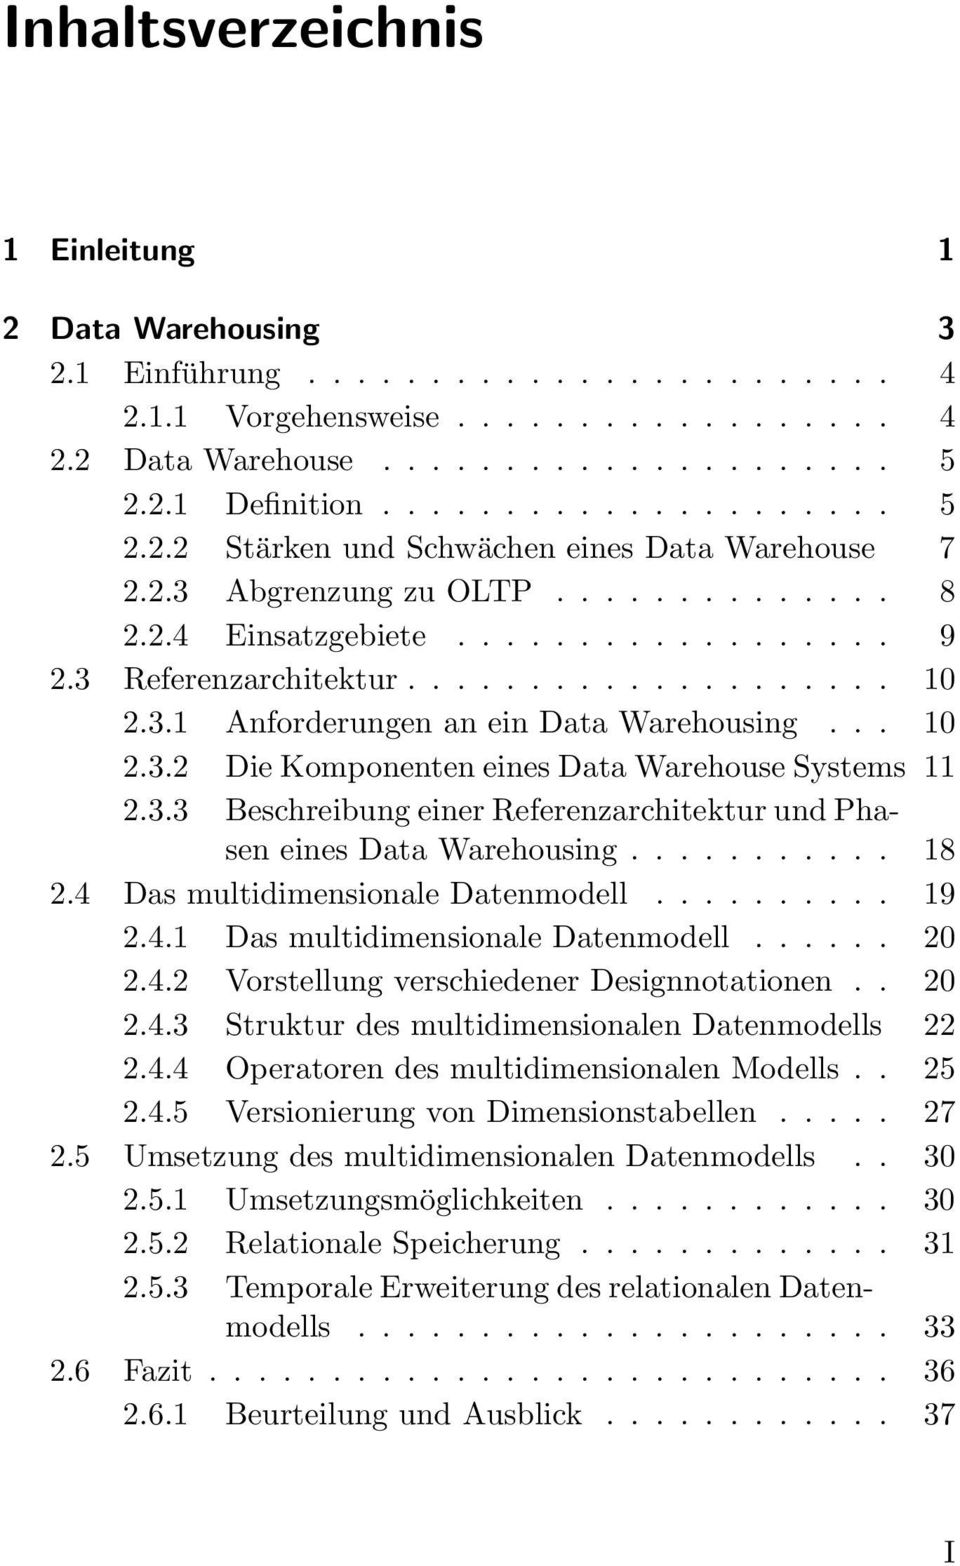 3.1 Anforderungen an ein Data Warehousing... 10 2.3.2 Die Komponenten eines Data Warehouse Systems 11 2.3.3 Beschreibung einer Referenzarchitektur und Phasen eines Data Warehousing........... 18 2.